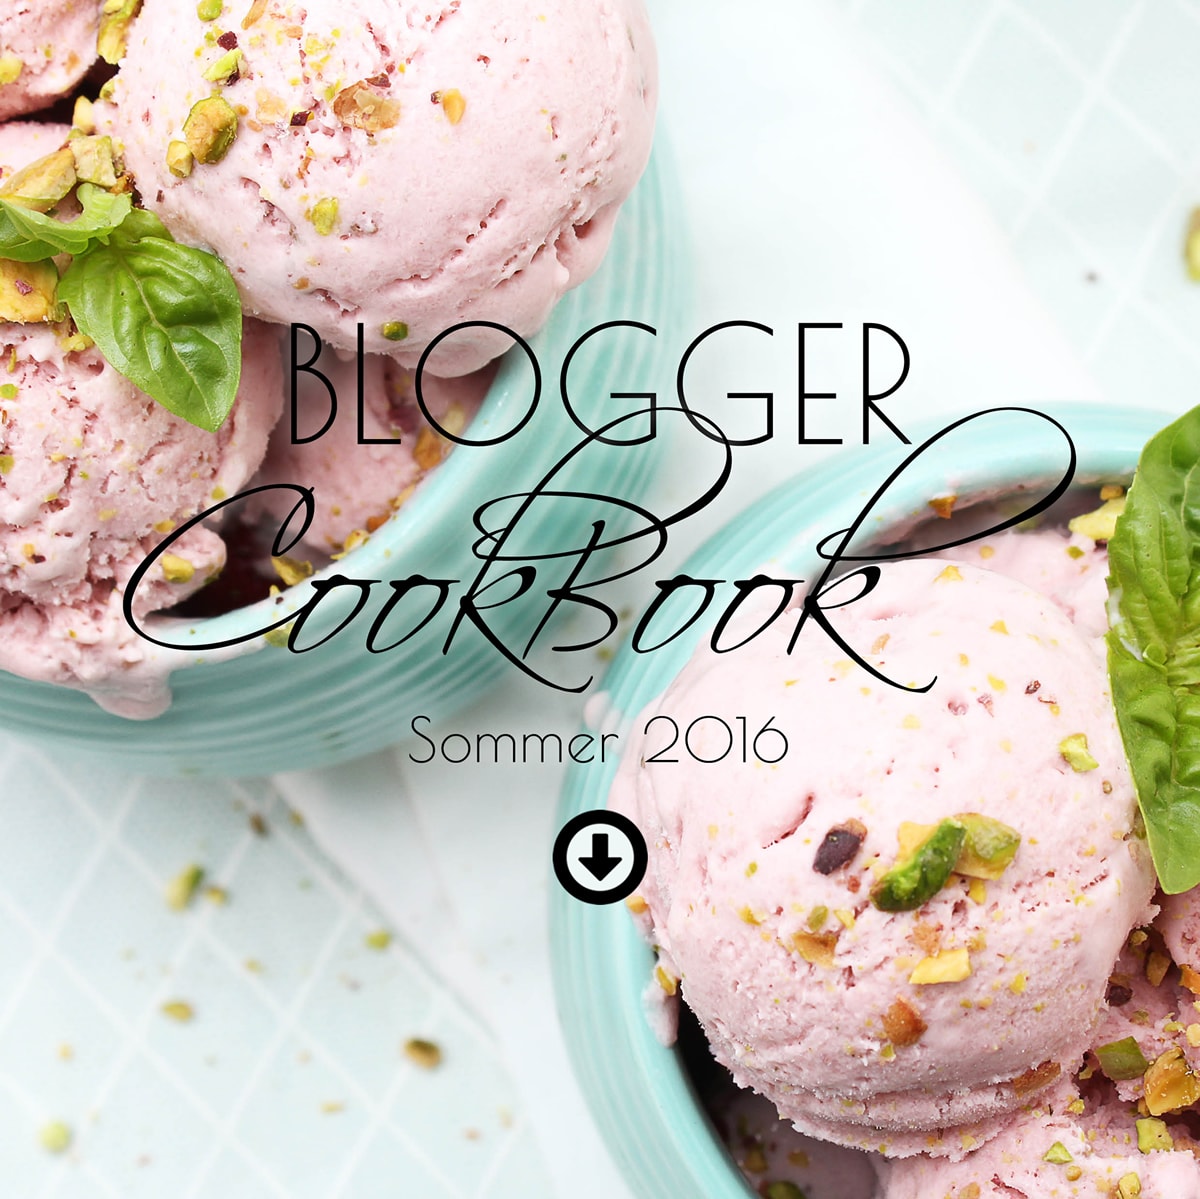 Leckere Sommer-Rezepte im Blogger-CookBook